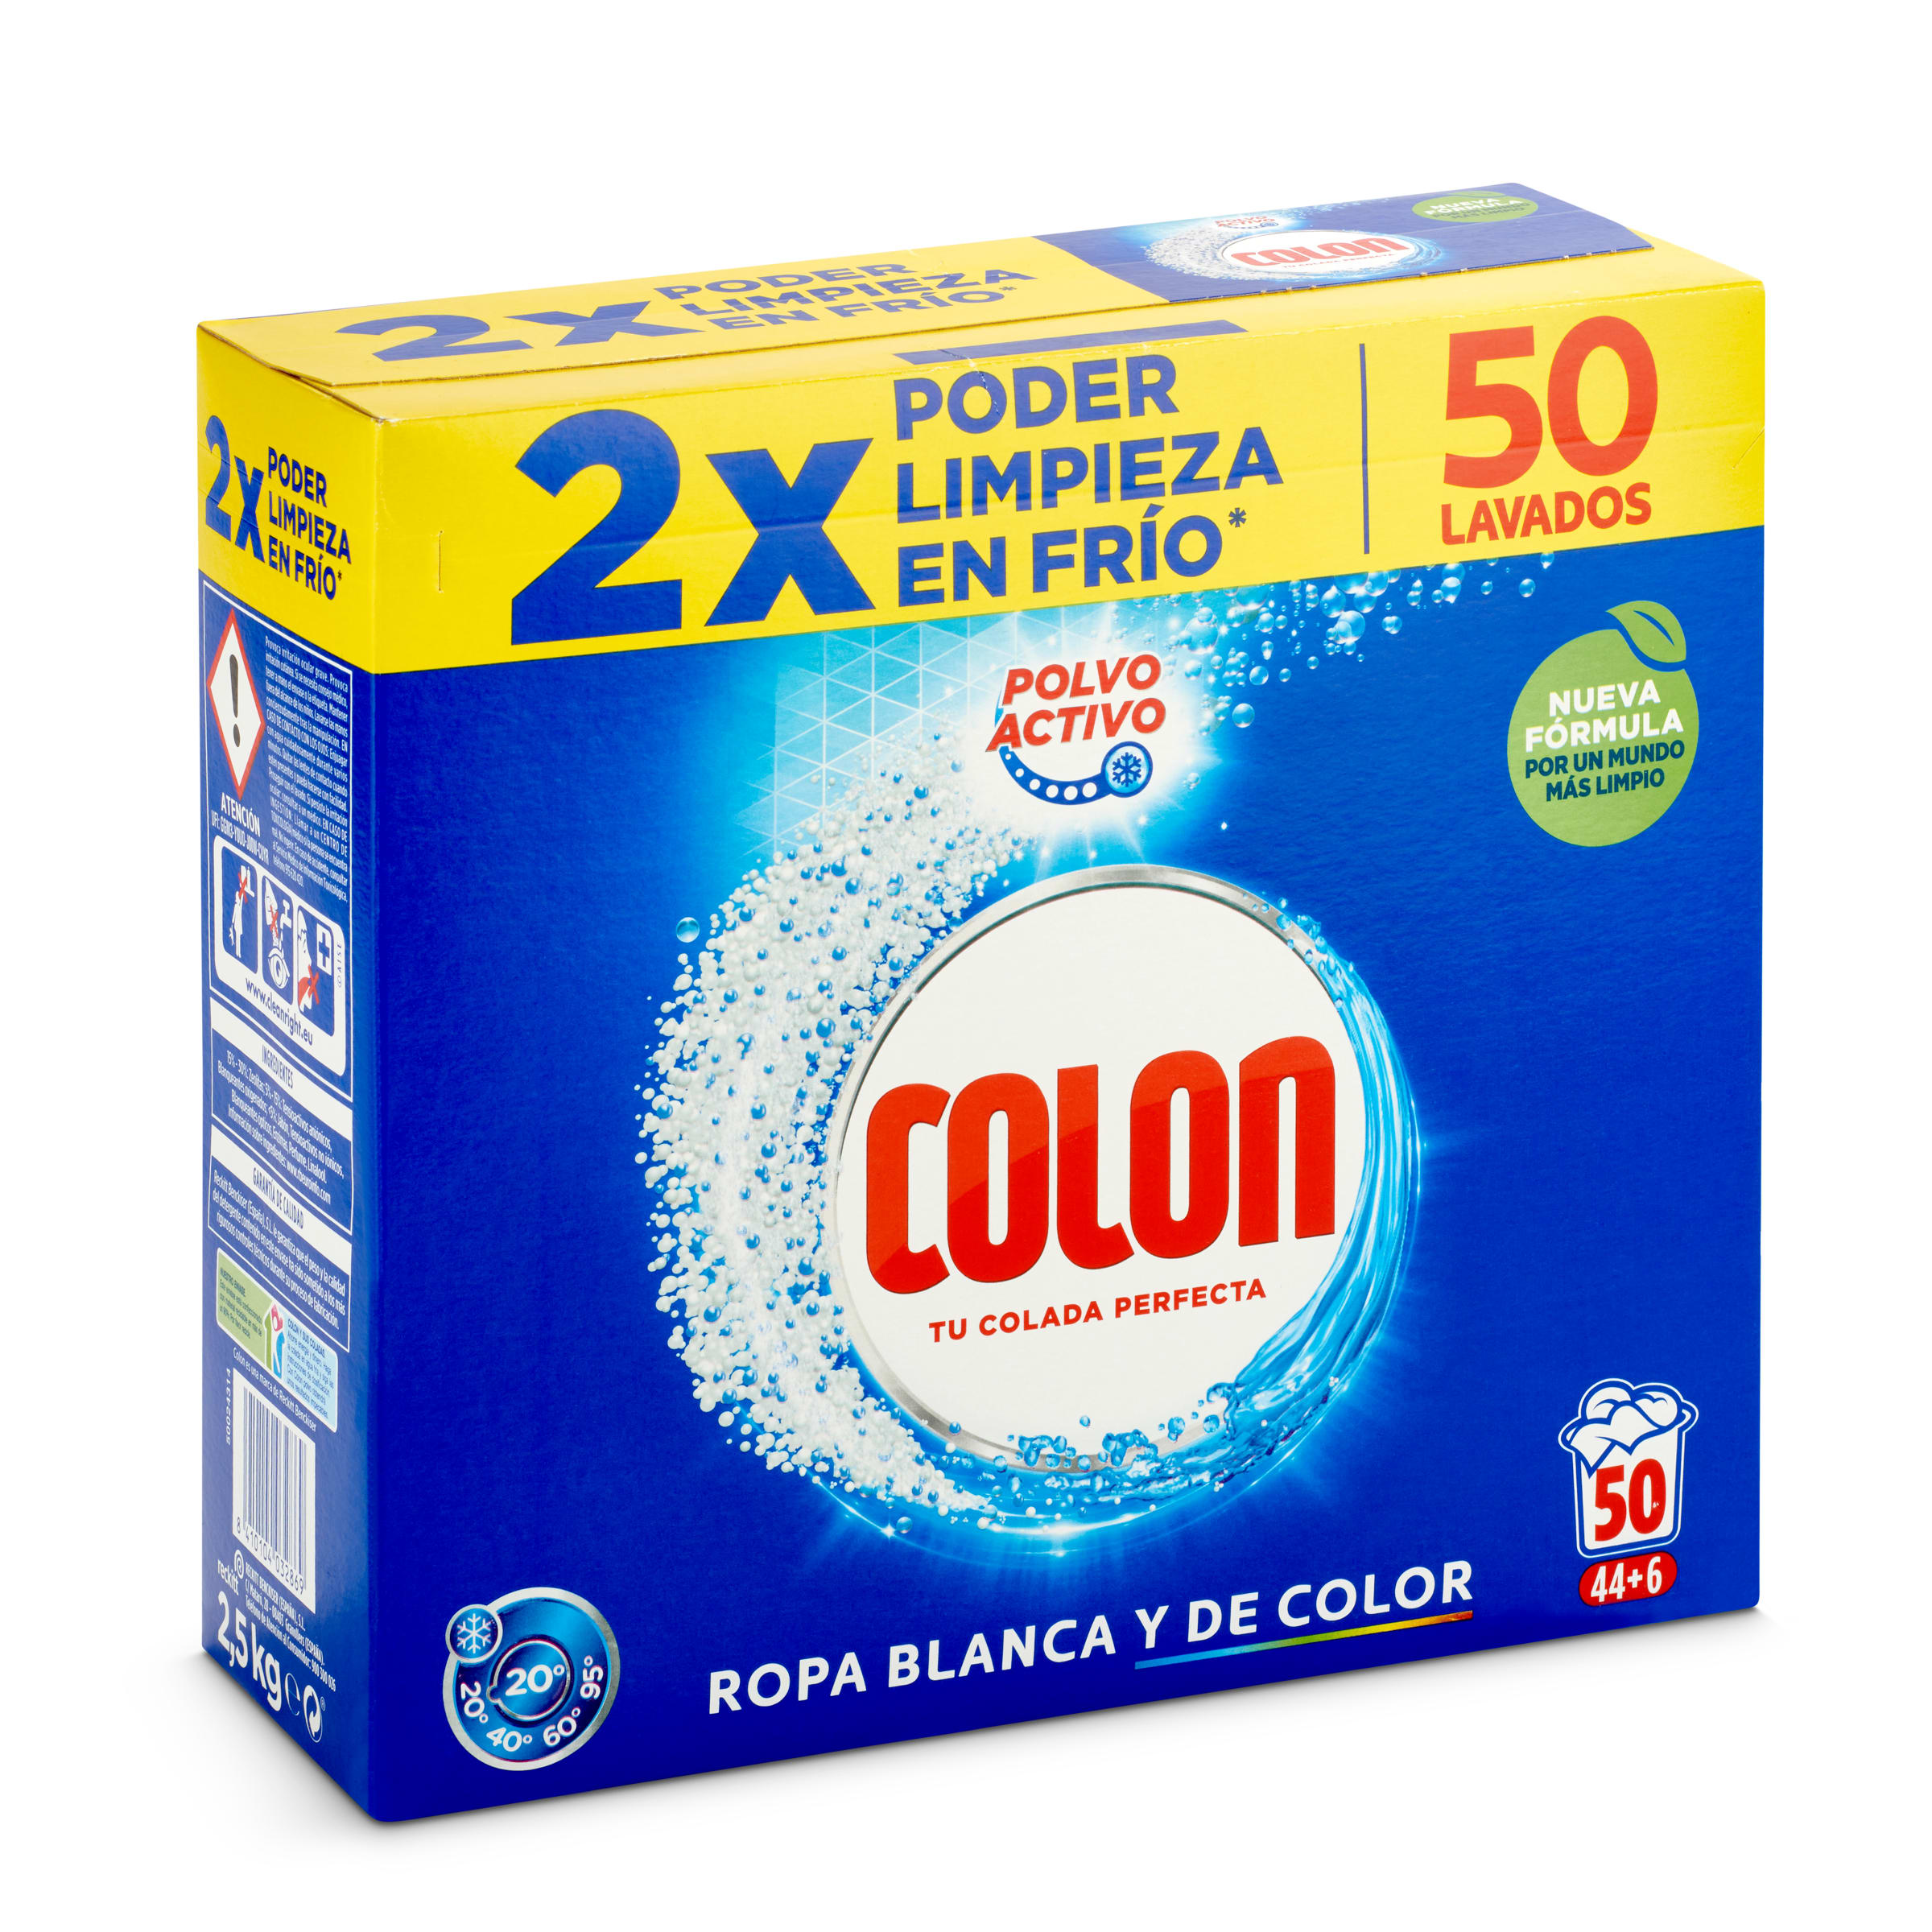 Detergente máquina en polvo Colon caja 50 lavados - Supermercados DIA